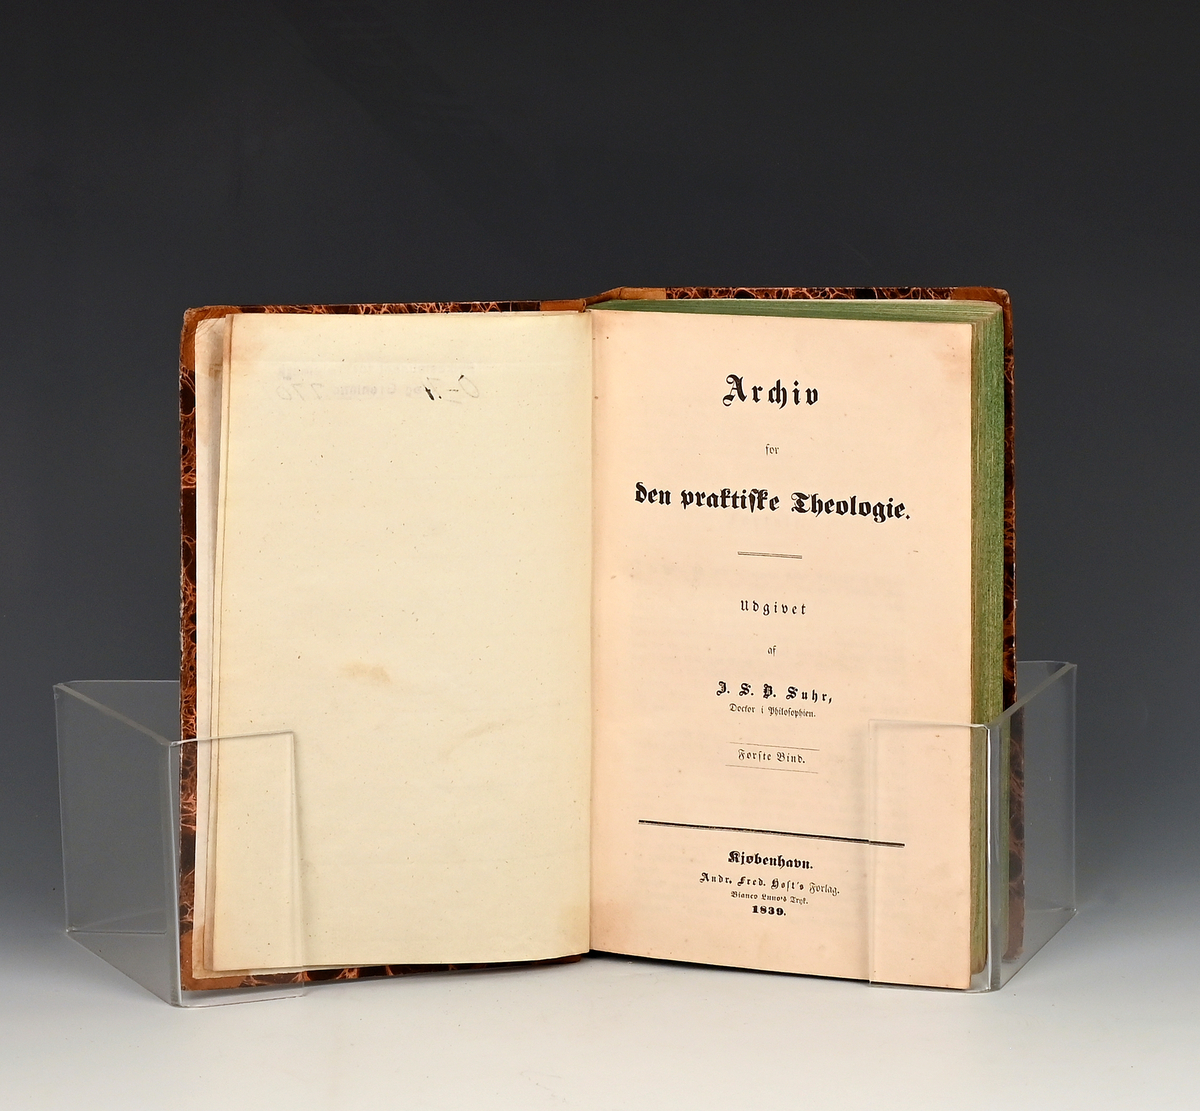 Archiv for den praktiske Theologie. Udg. af J.S.B. Suhm. I-II Kbhv. 1839-40